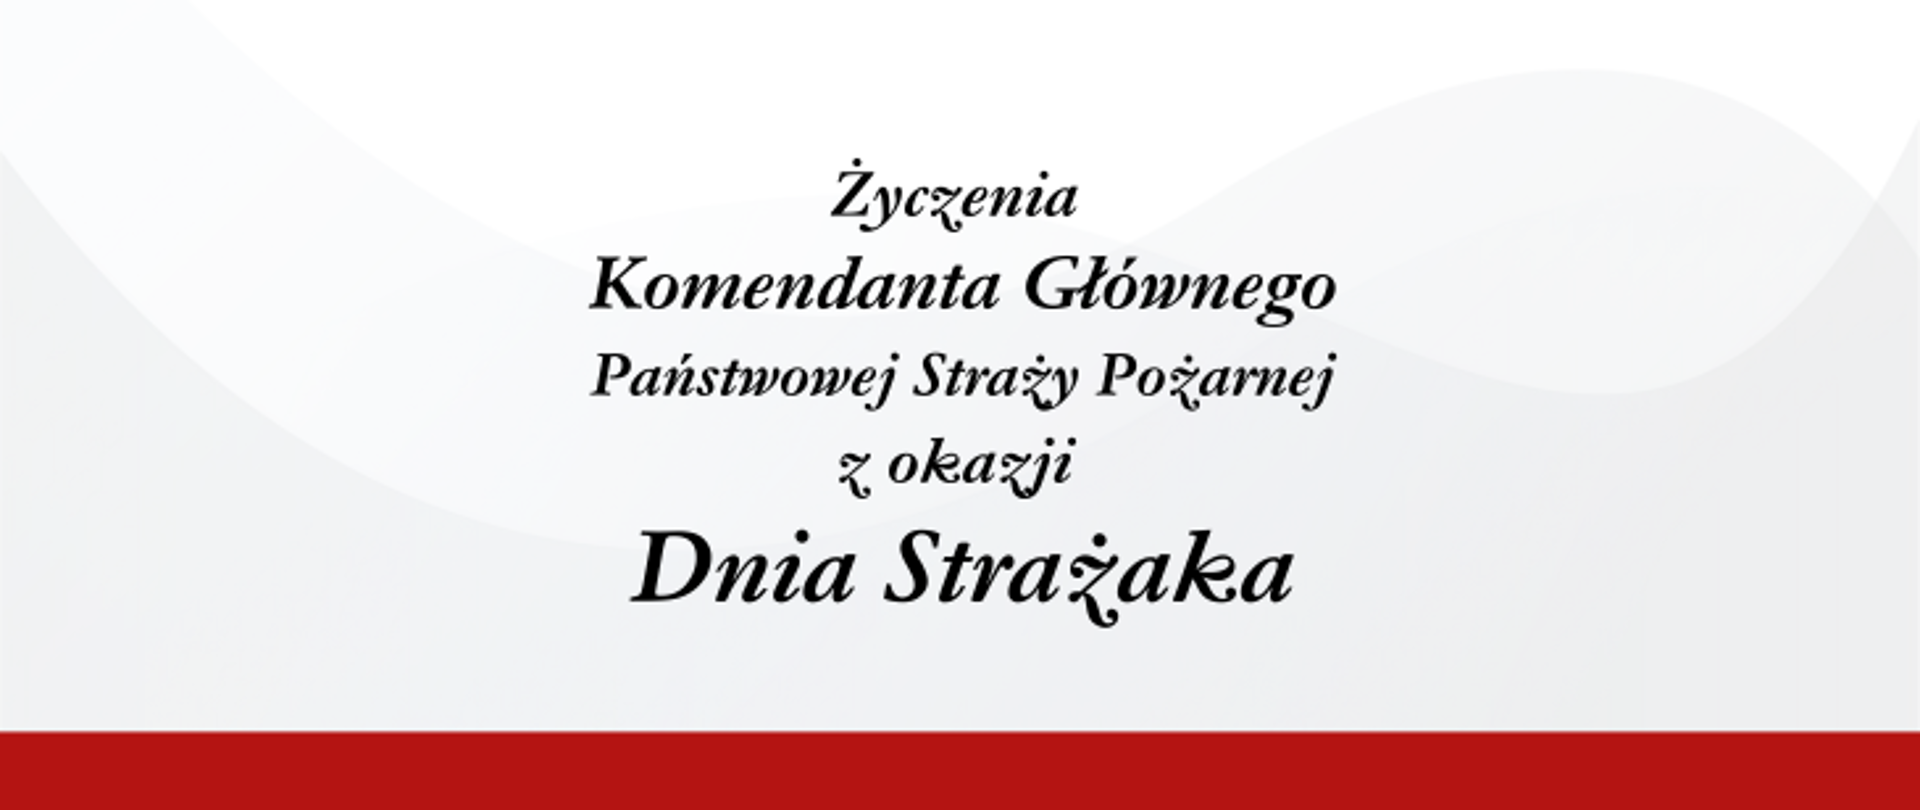 Życzenia Komendanta Głównego PSP z okazji Międzynarodowego Dnia Strażaka.